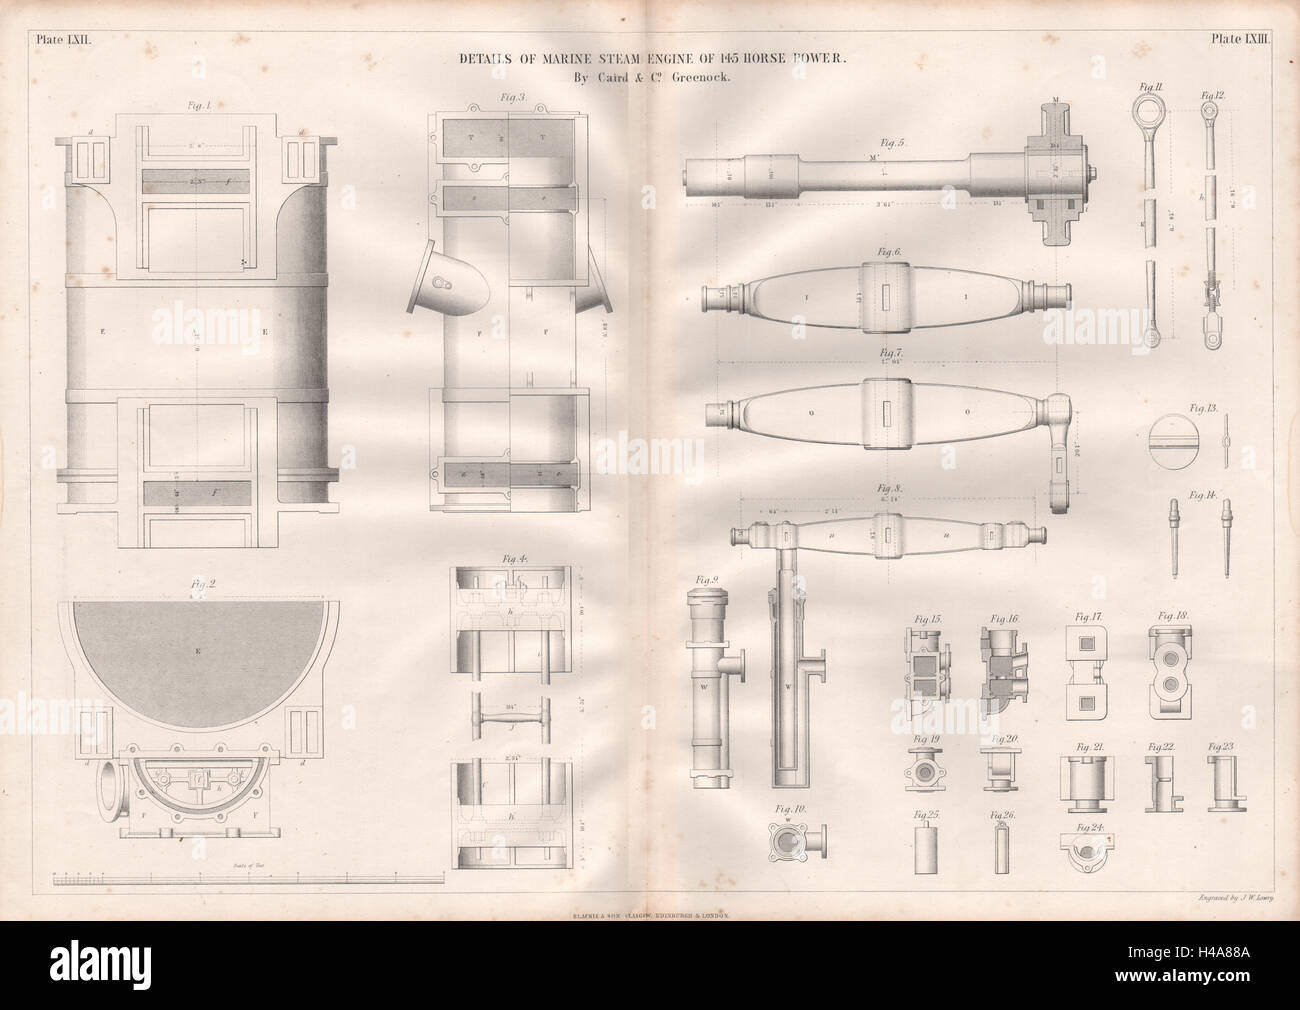 19C disegno tecnico. 145hp vapore marino dettagli motore. Caird & Co. 1847 Foto Stock